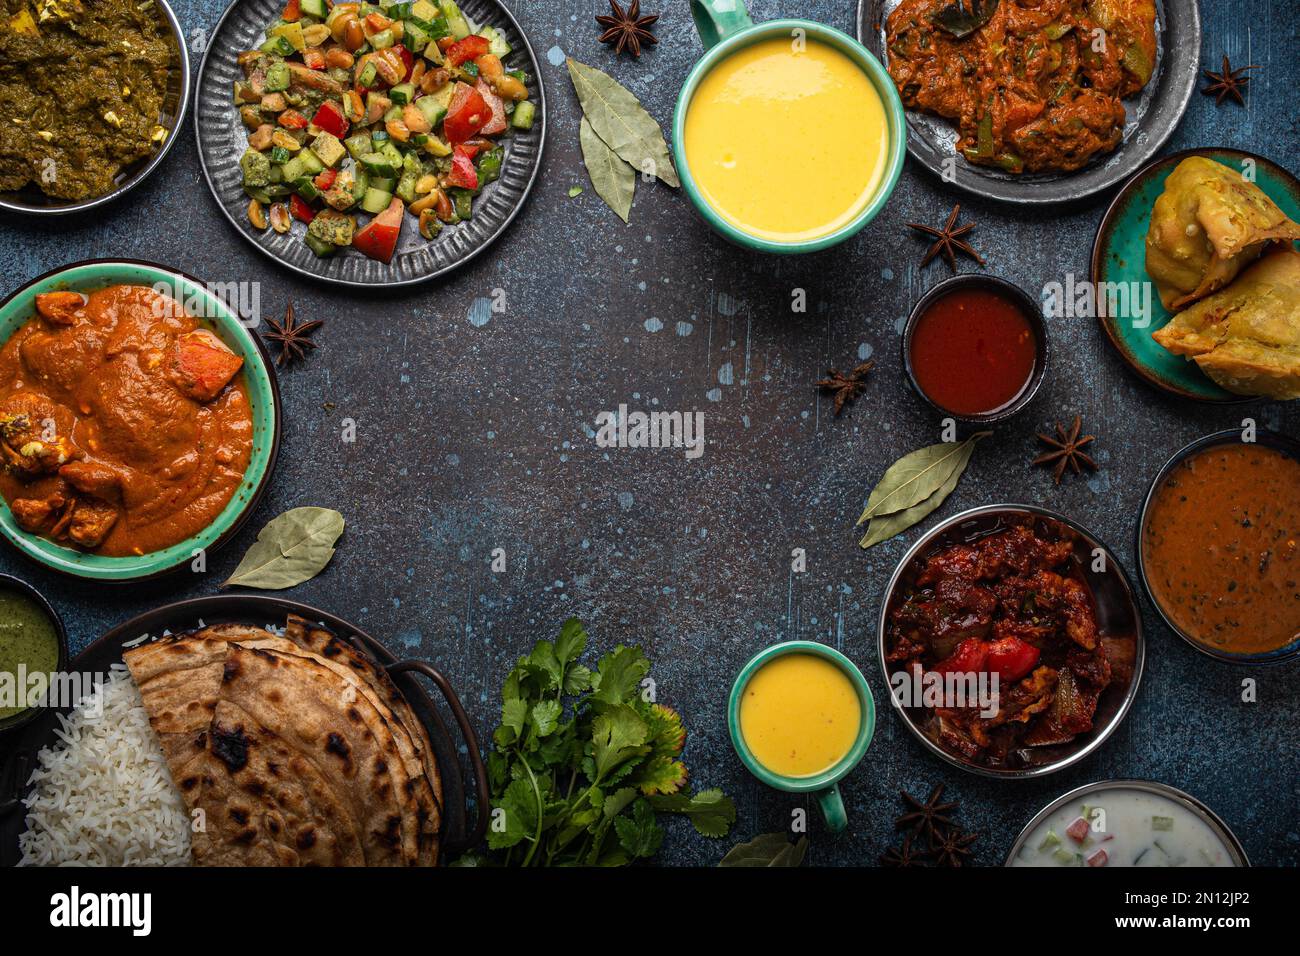 Buffet de nourriture ethnique indienne sur table en béton d'en haut: Curry, samosa, riz biryani, dal, paneer, chapatti, naan, tikka masala de poulet, lassi de mangue, d Banque D'Images